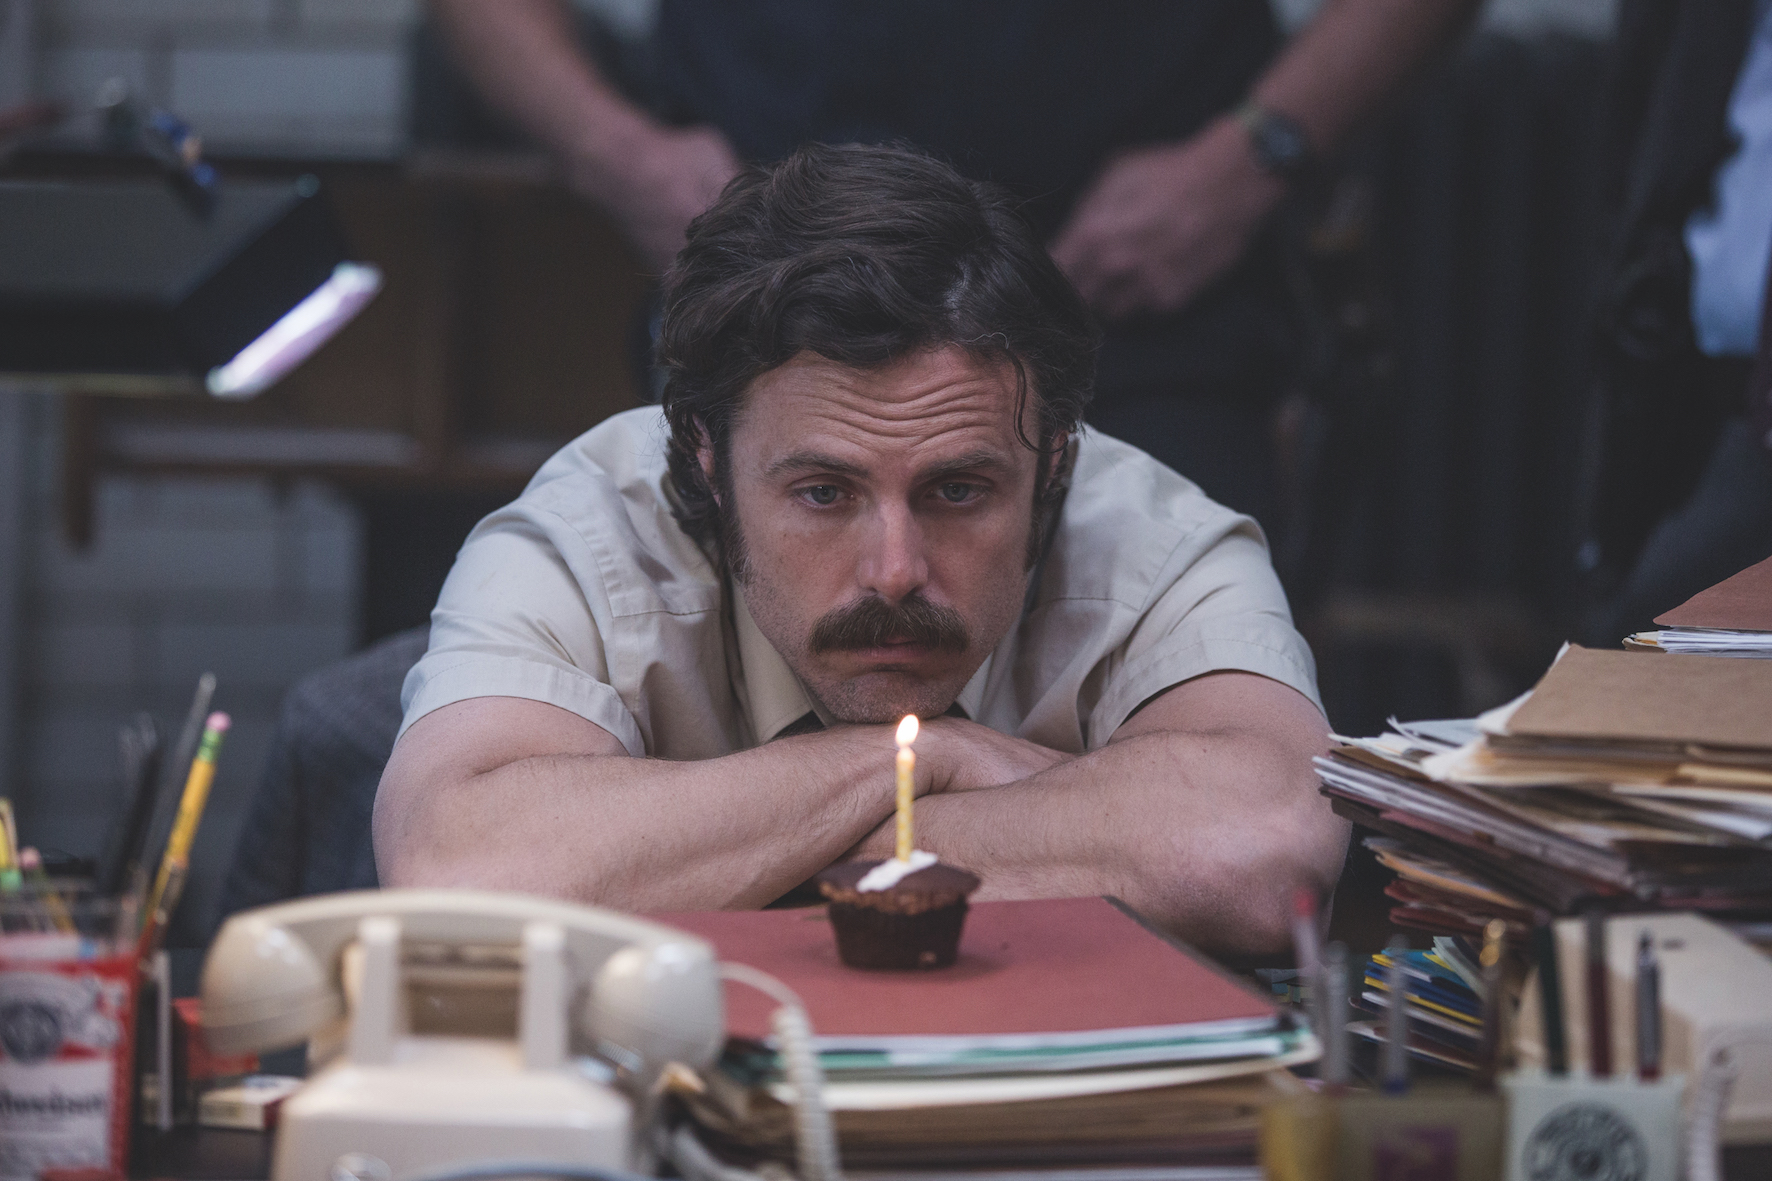 Filmstill aus "Ein Gauner & Gentleman": Ein Mann mittleren Alters sitzt in einem Büro und schaut betrübt auf einen Brownie mit brennender Kerze.